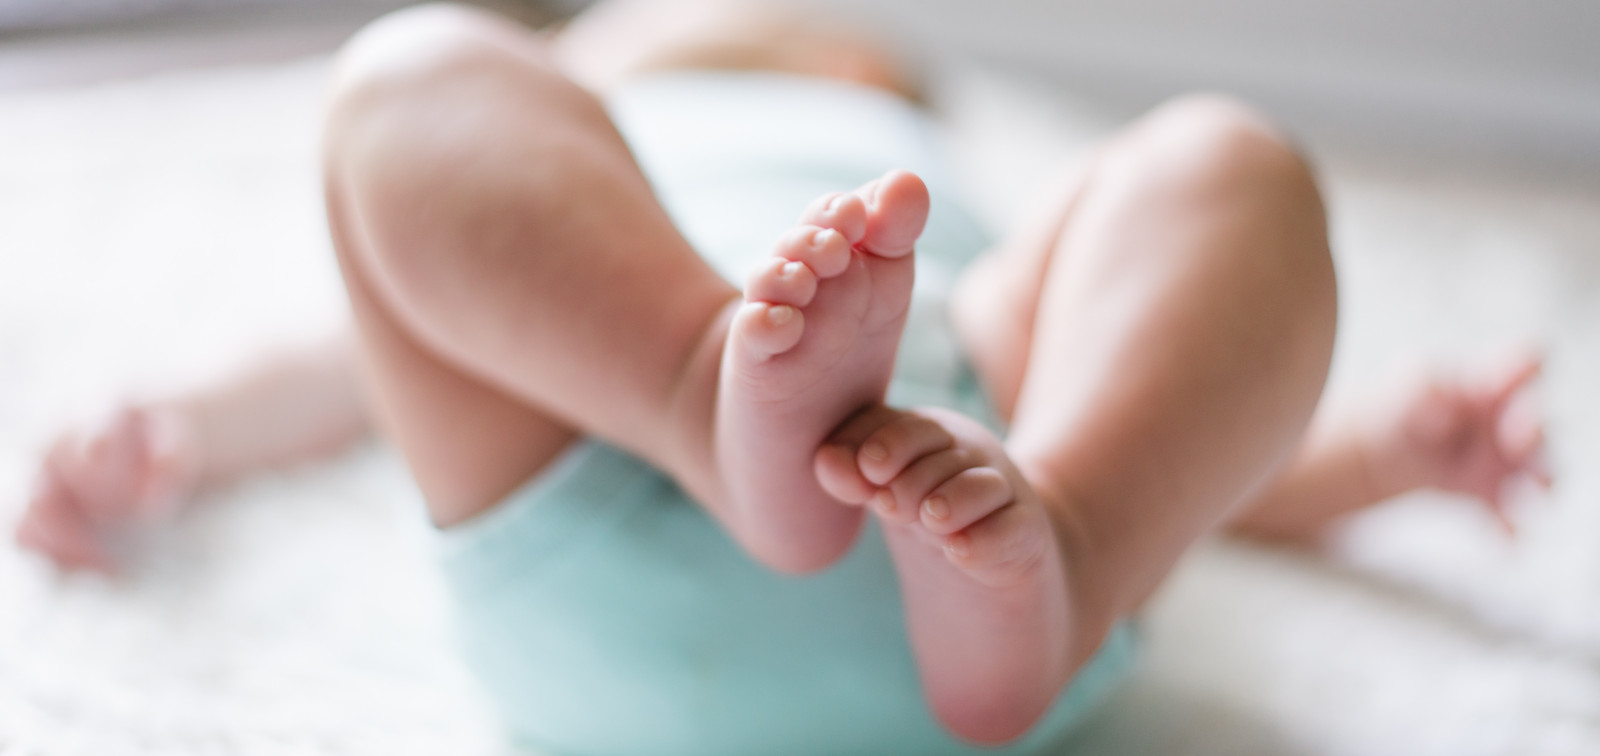 Imagen de los pies de un bebé